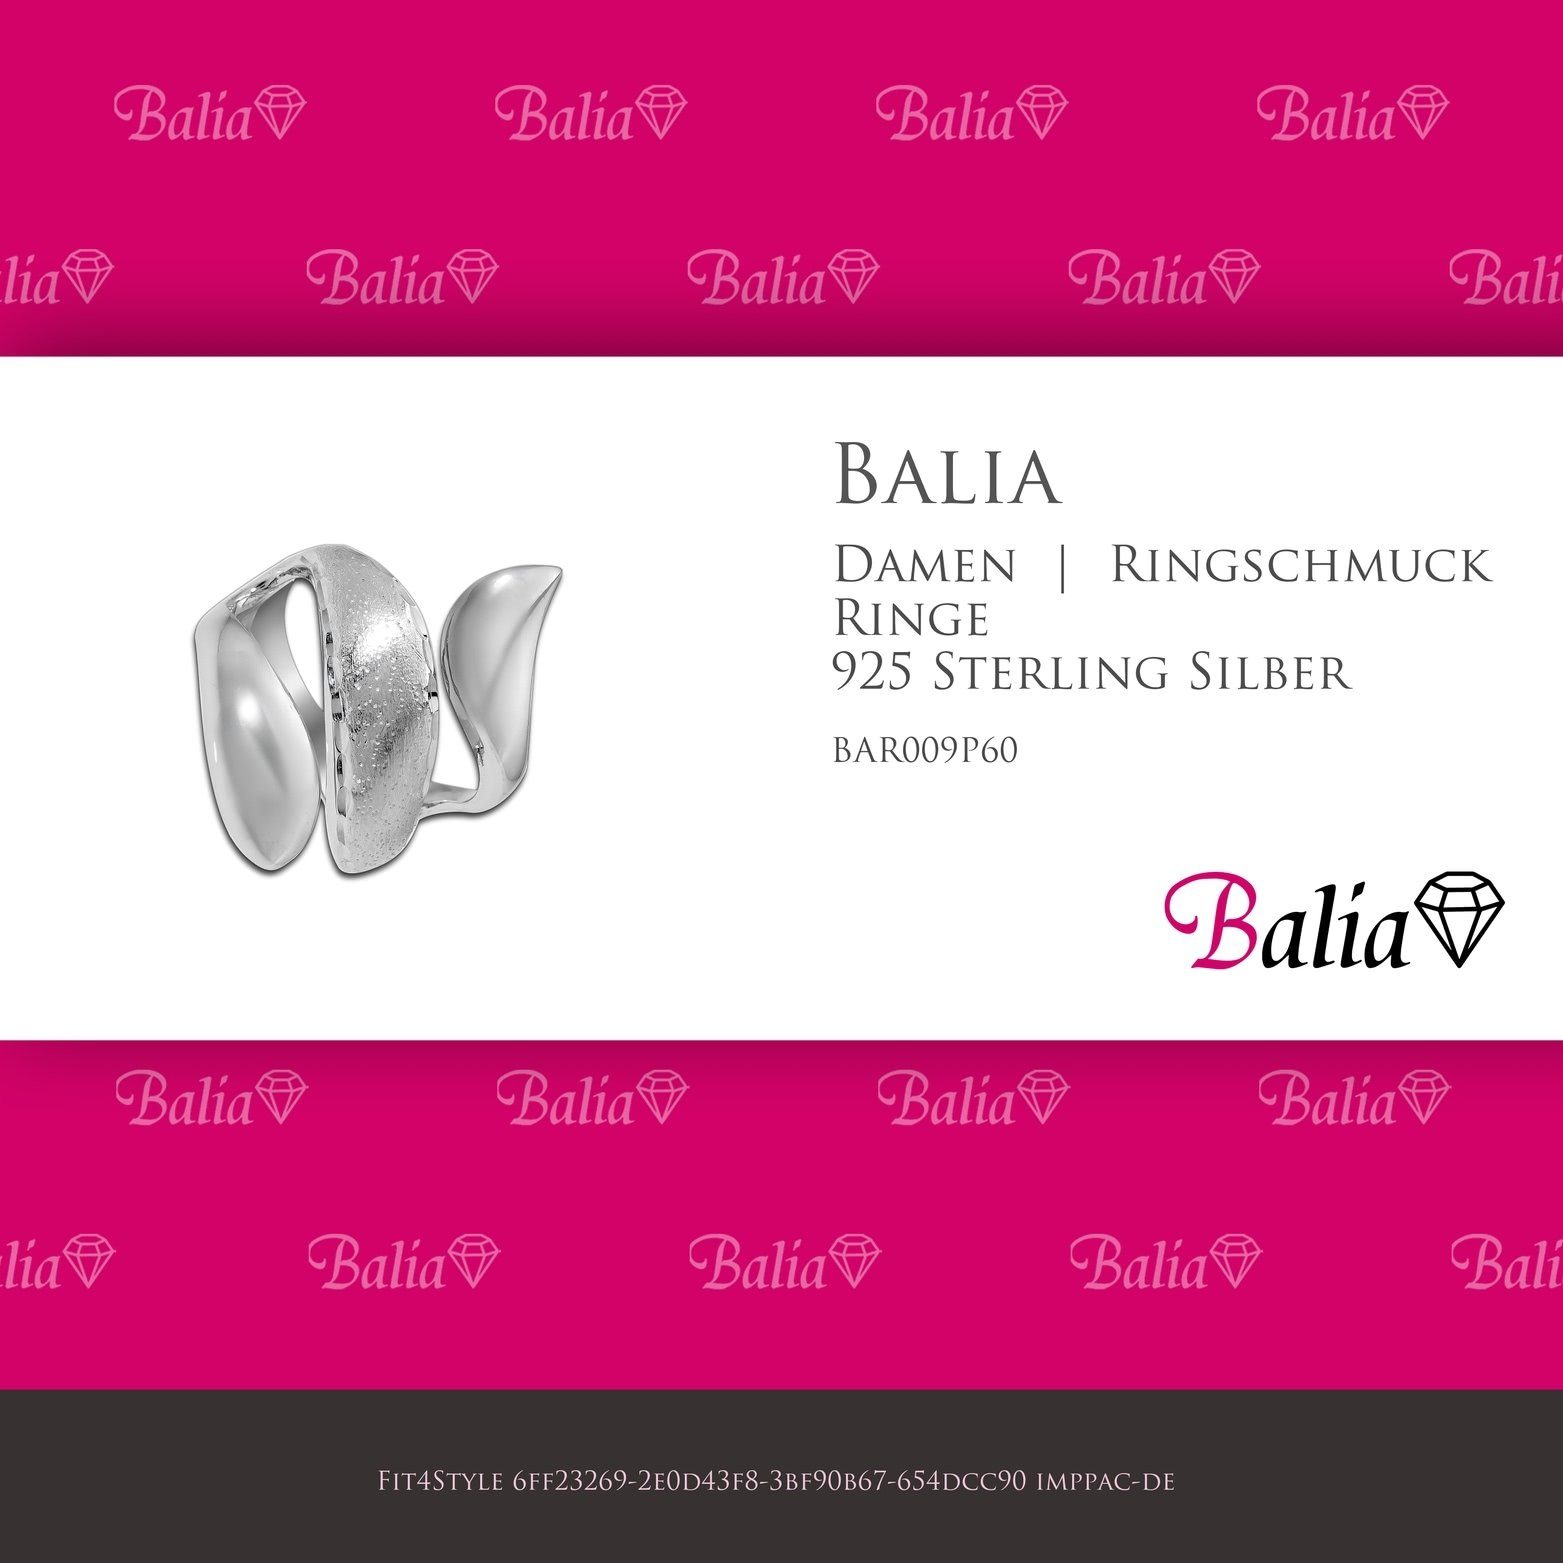 (19,1), (Schlange) Balia Silber Damen Sterling Größe 60 925 (Fingerring), Balia Ring diamantierter mit für 925 Silber Fingerring Silberring